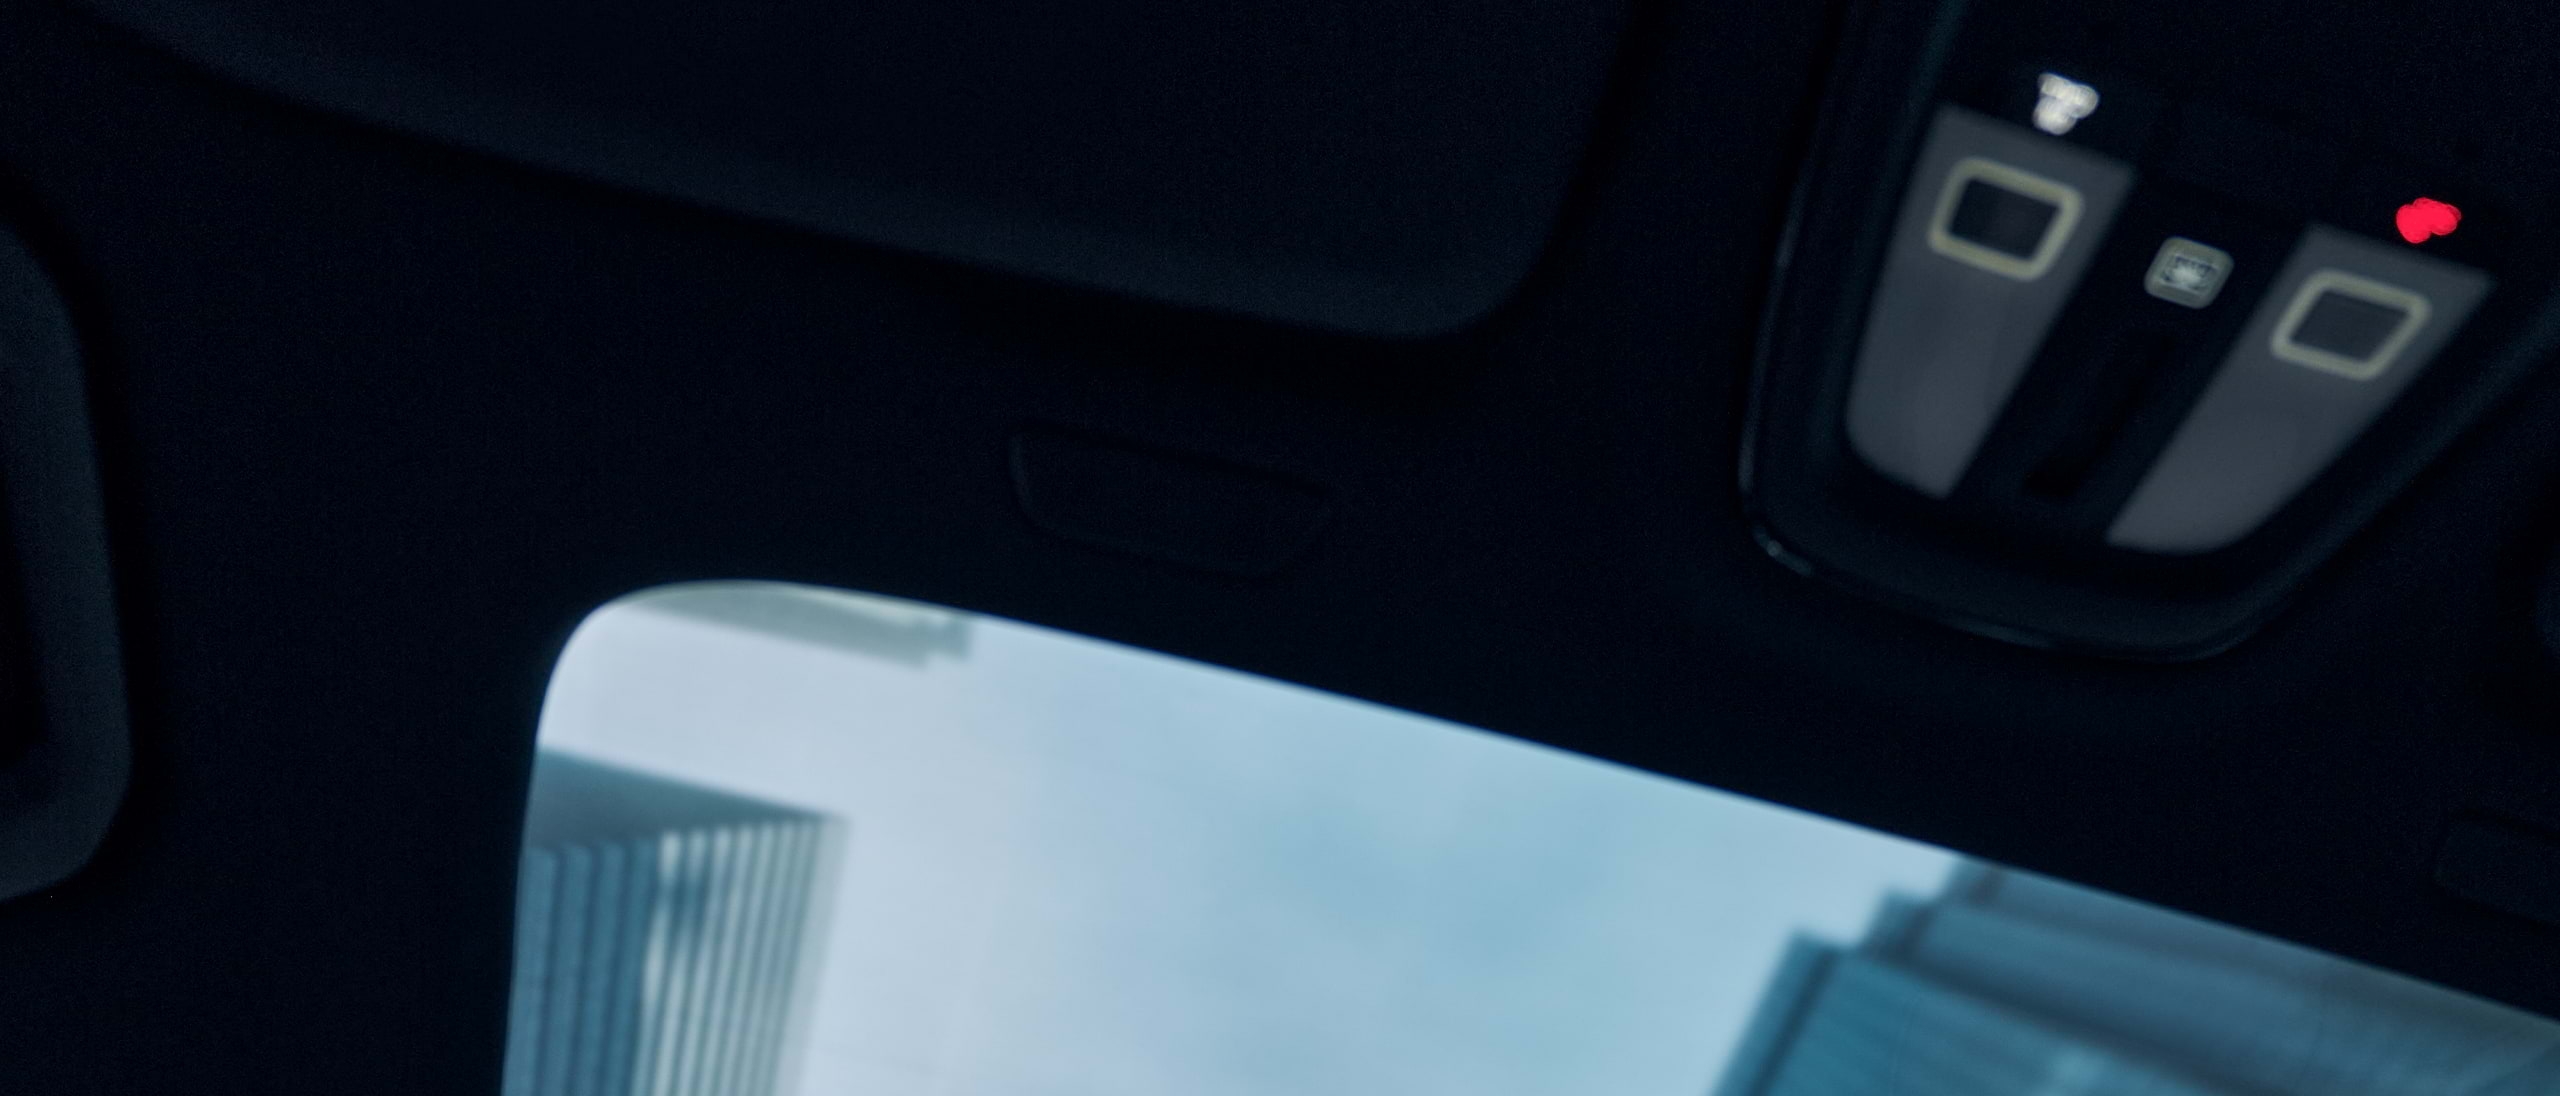 Neboderi se naziru kroz panoramski krov Volvo automobila u pokretu.